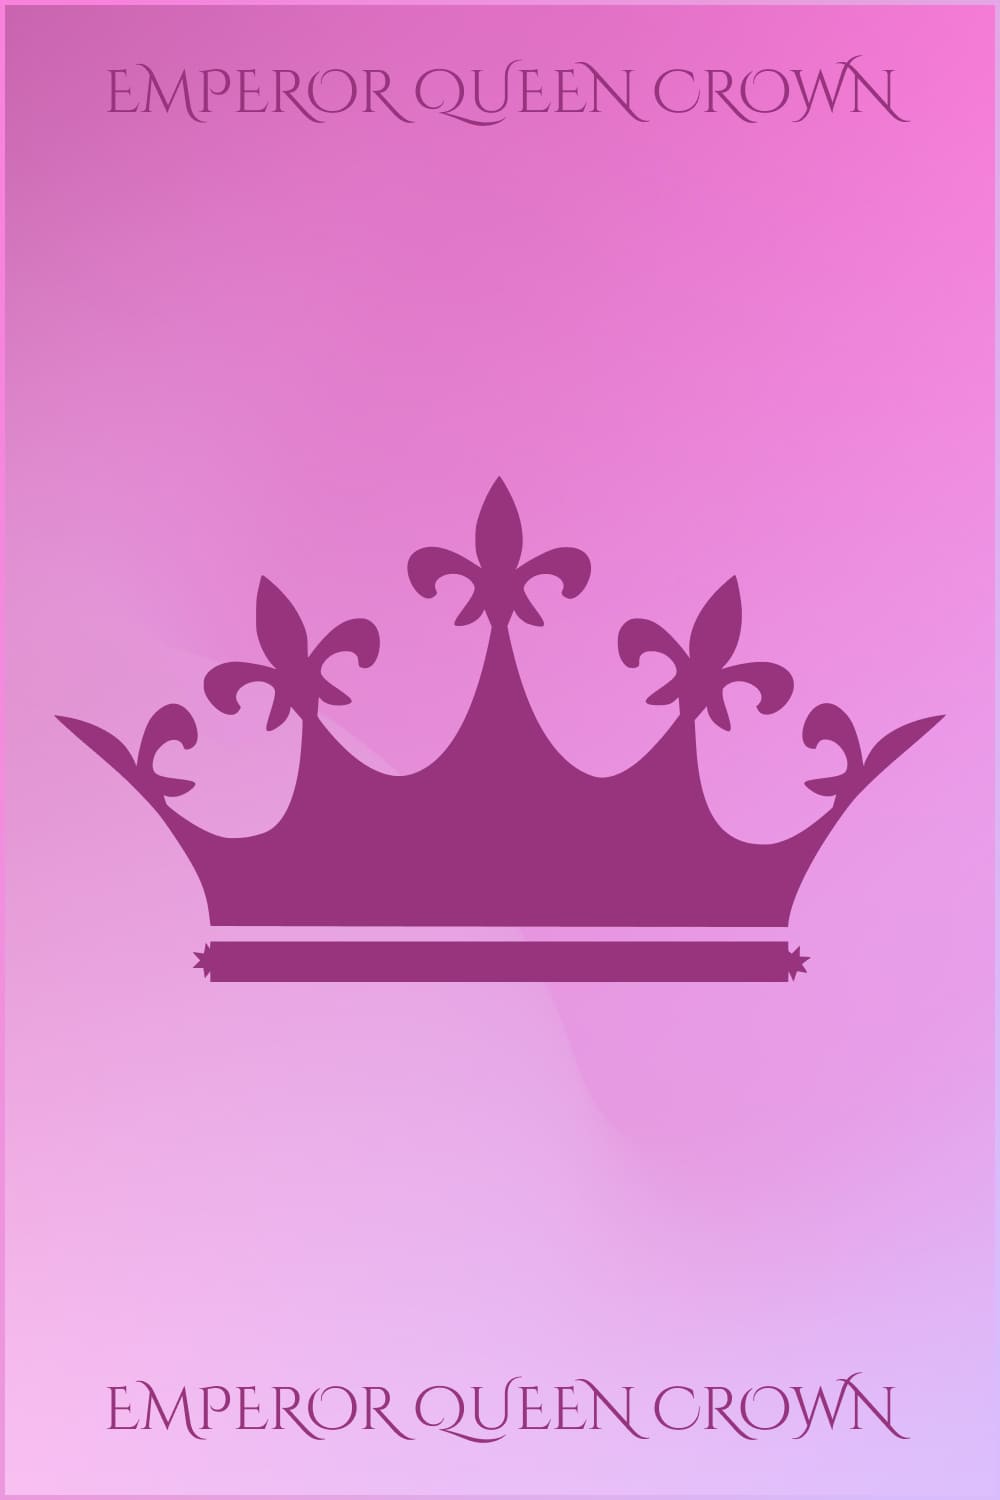 Emperor Queen Crown Pinterest.